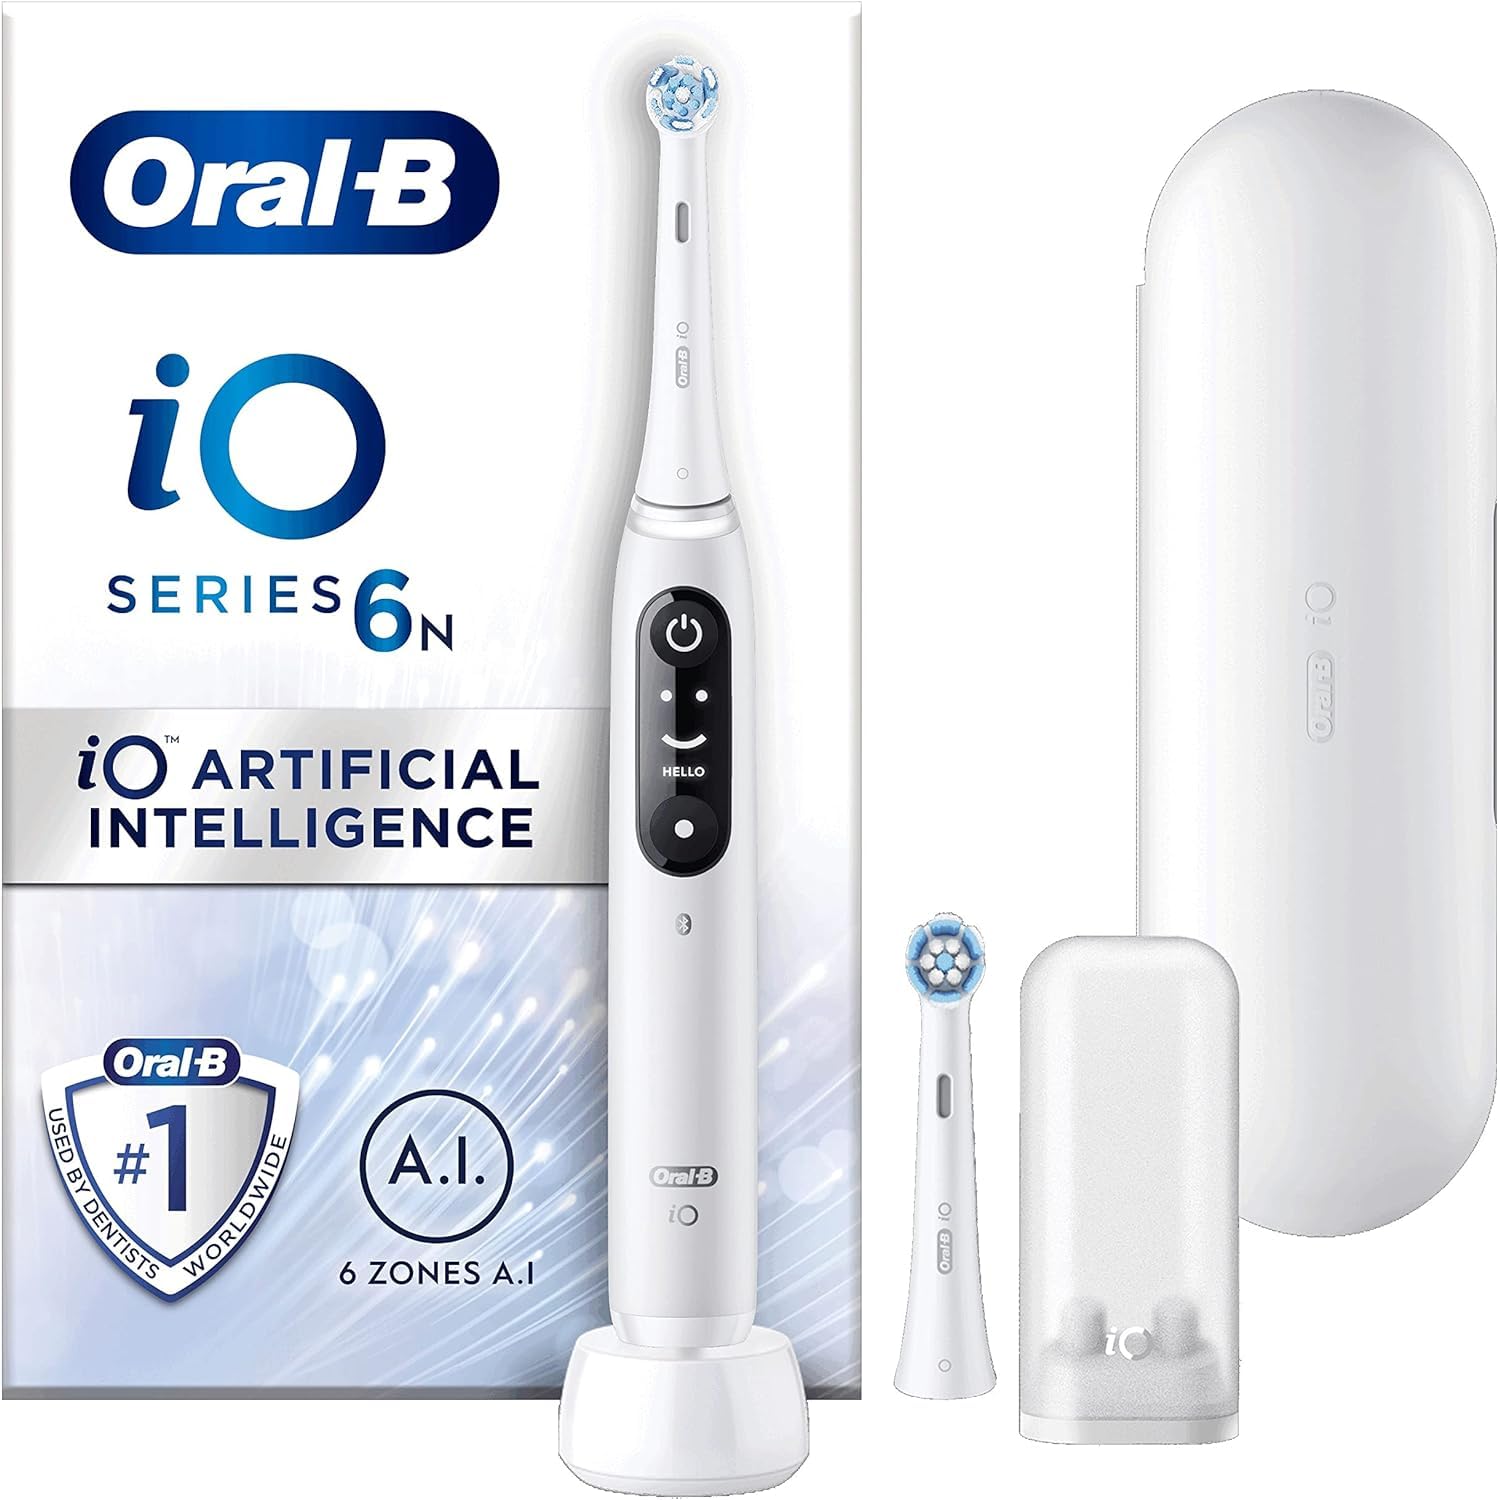 Oral-B iO Series 6 Elektrische Zahnbürste/Electric Toothbrush, 2 Aufsteckbürsten, 5 Putzmodi für Zahnpflege, Display & Reiseetui, Designed by Braun, grey opal